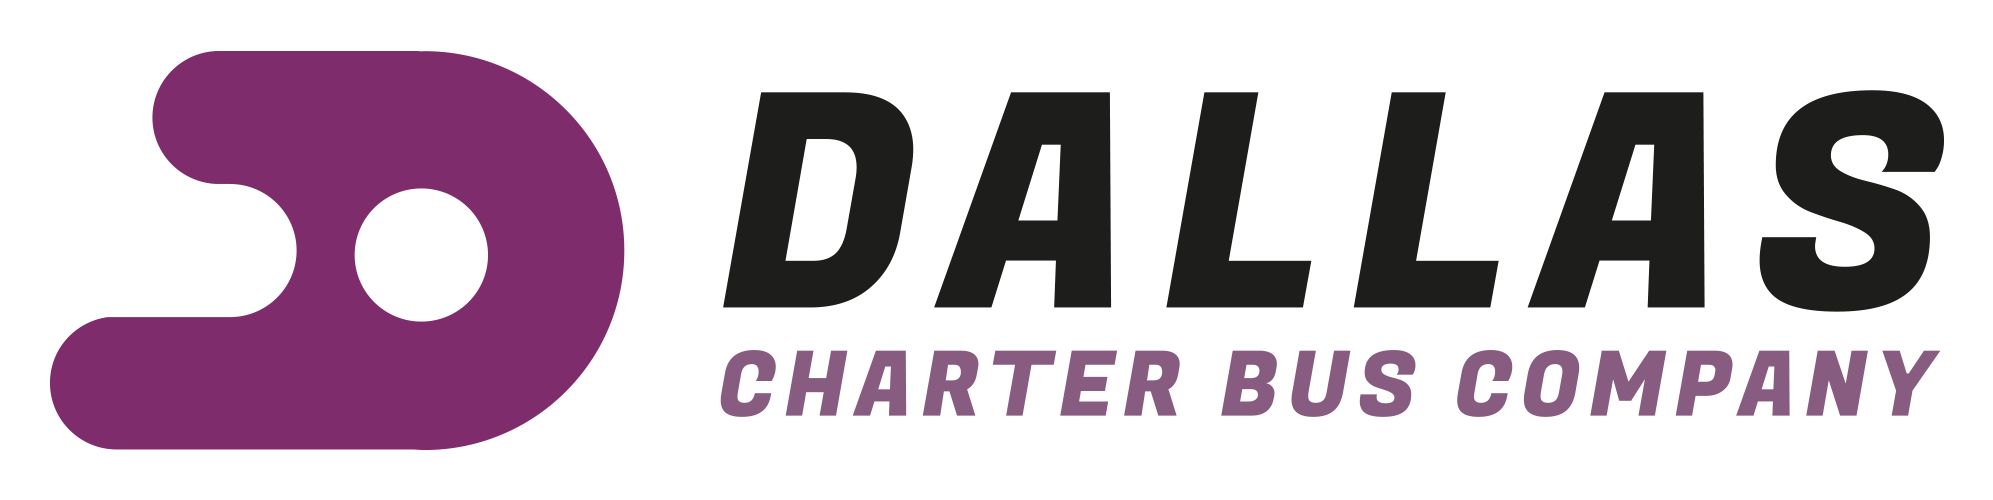 Dallas Charter Bus Company